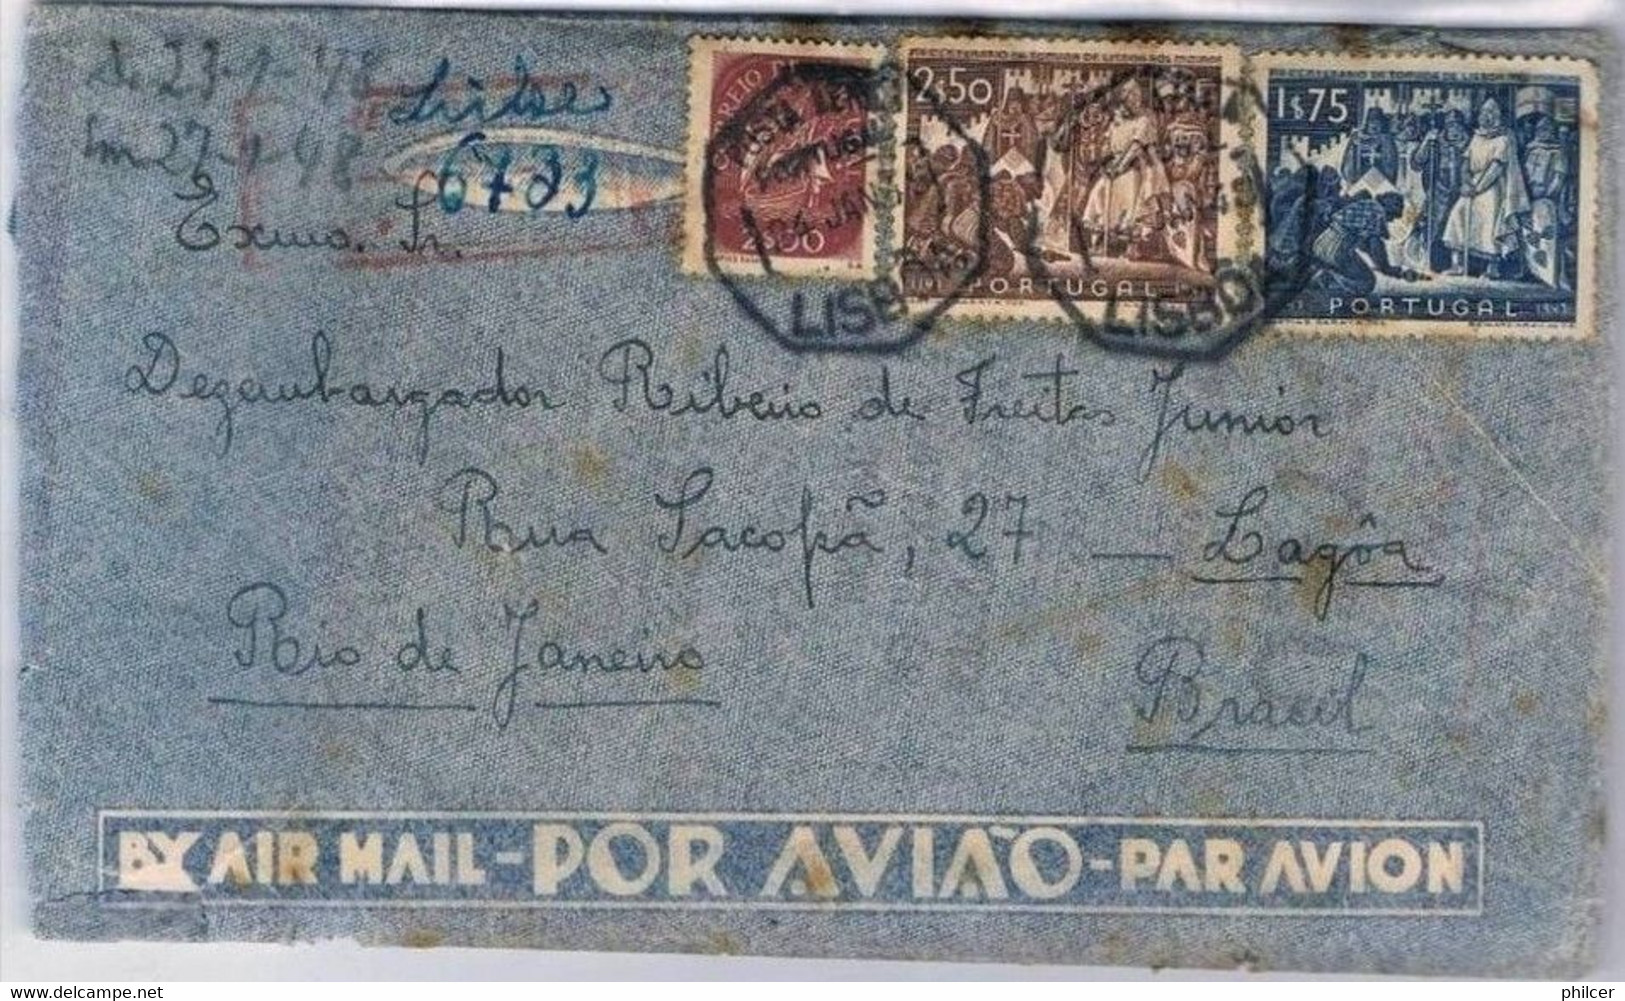 Portugal, 1948, Lisboa-Rio De Janeiro - Usado